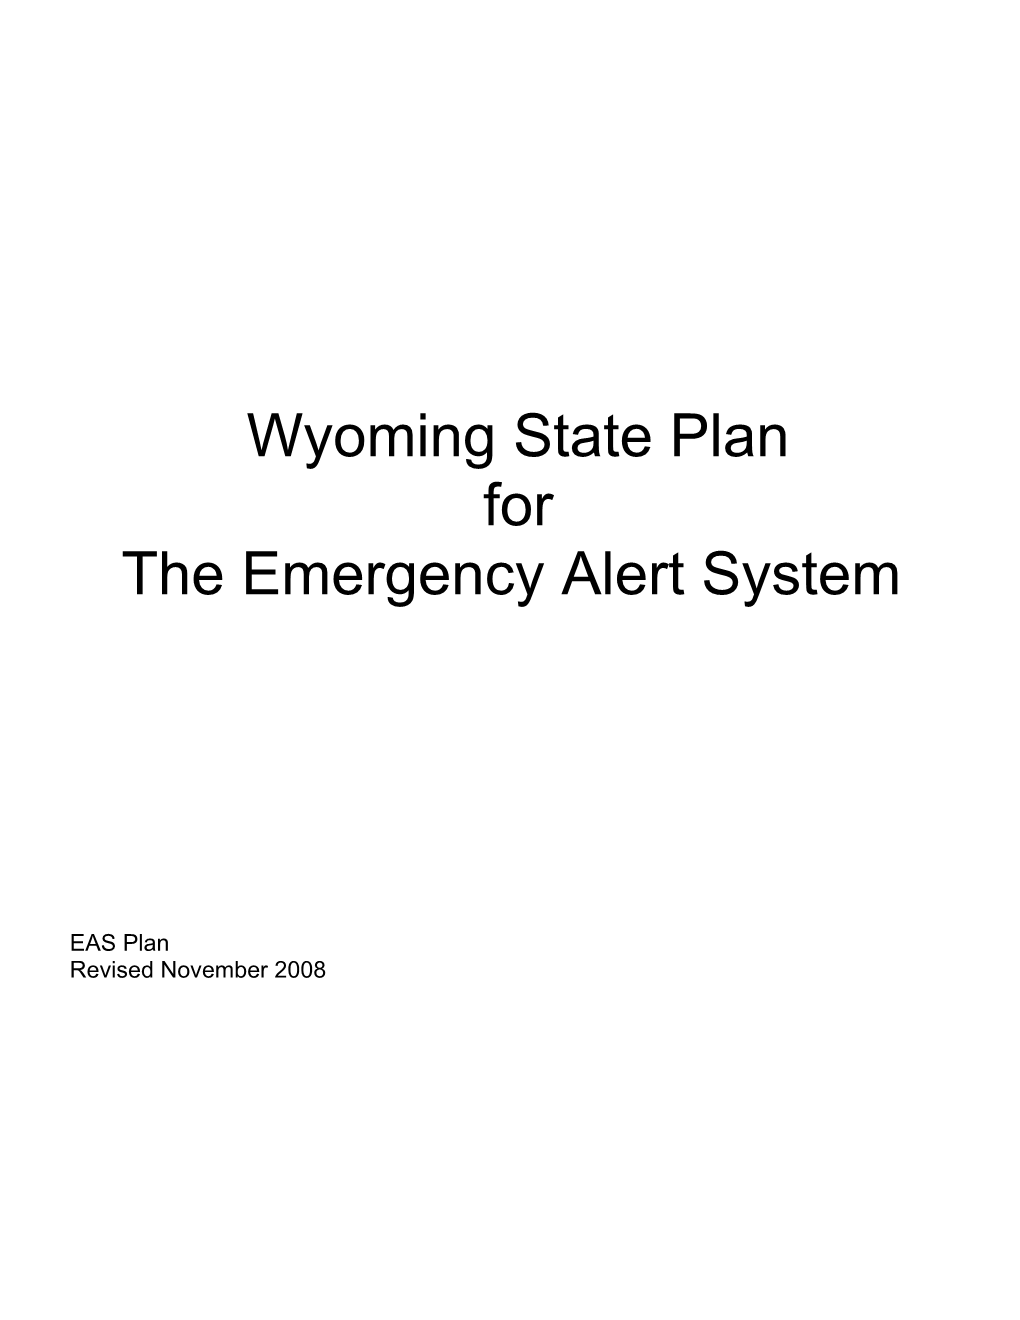 Wyoming EAS Final Plan s1